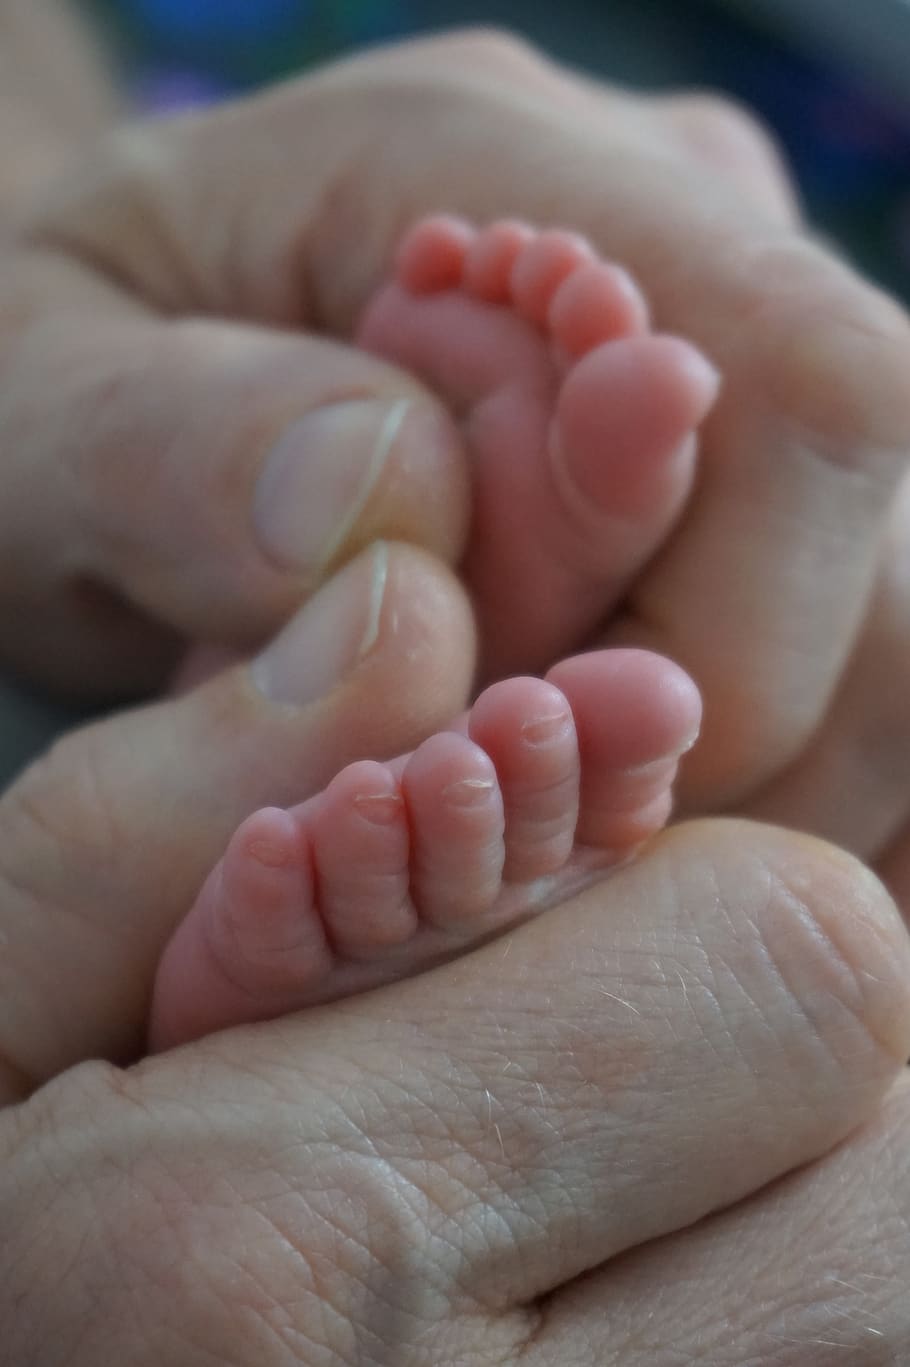 mais gentil, bebê, pés de bebê, recém-nascido, dedos do pé, dedos do bebê, pai, mãos, parte do corpo humano, parte do corpo